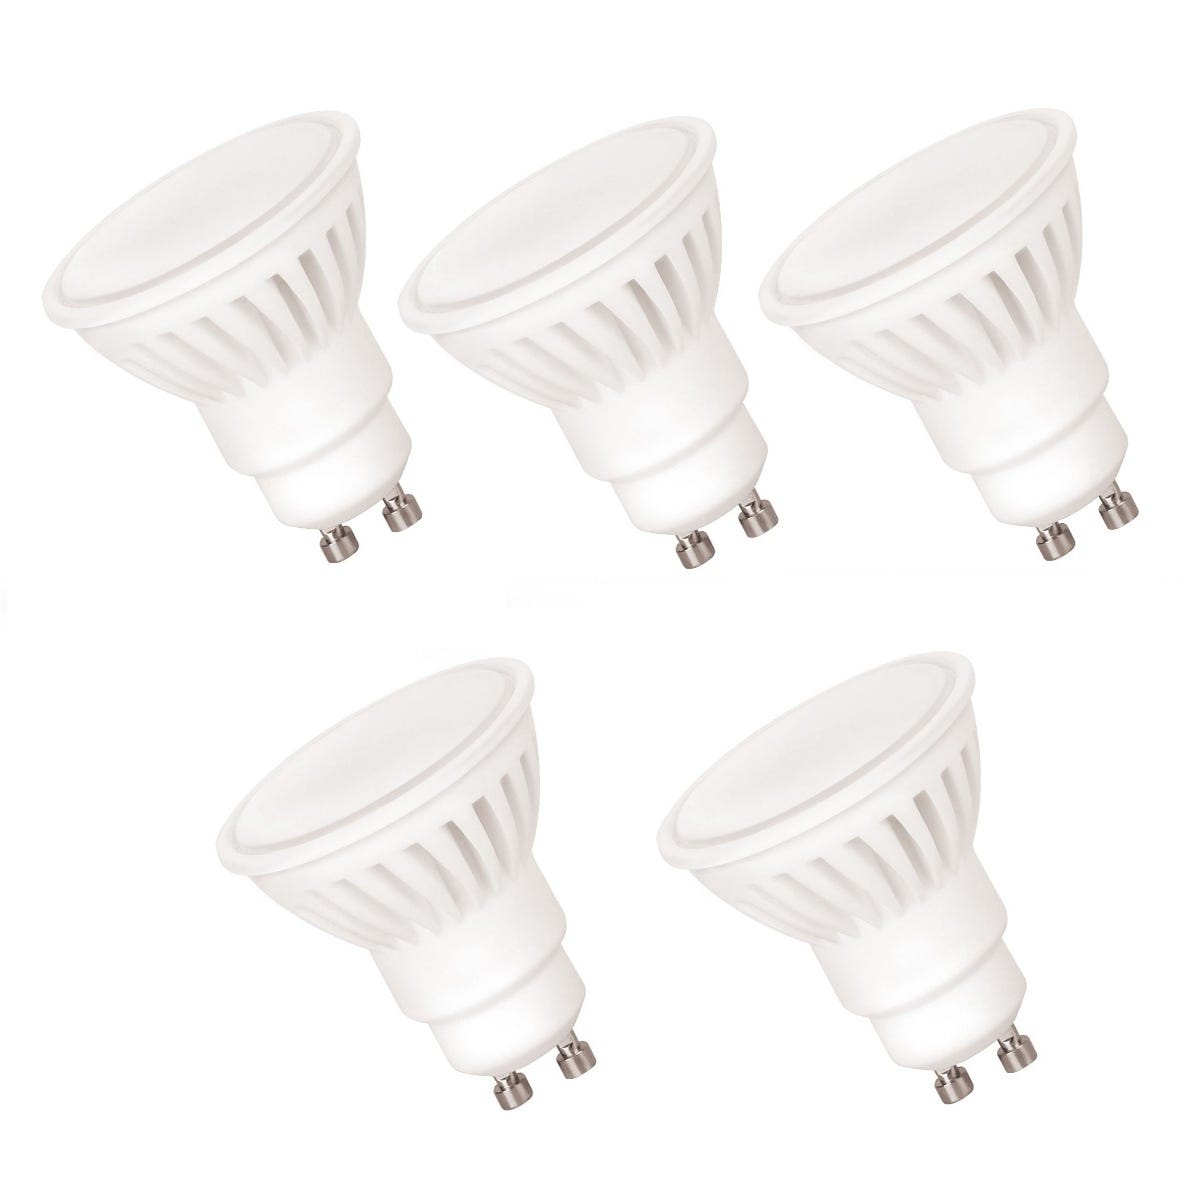 5 Ampoules LED GU10,10W, 920lm, blanc neutre 4000K